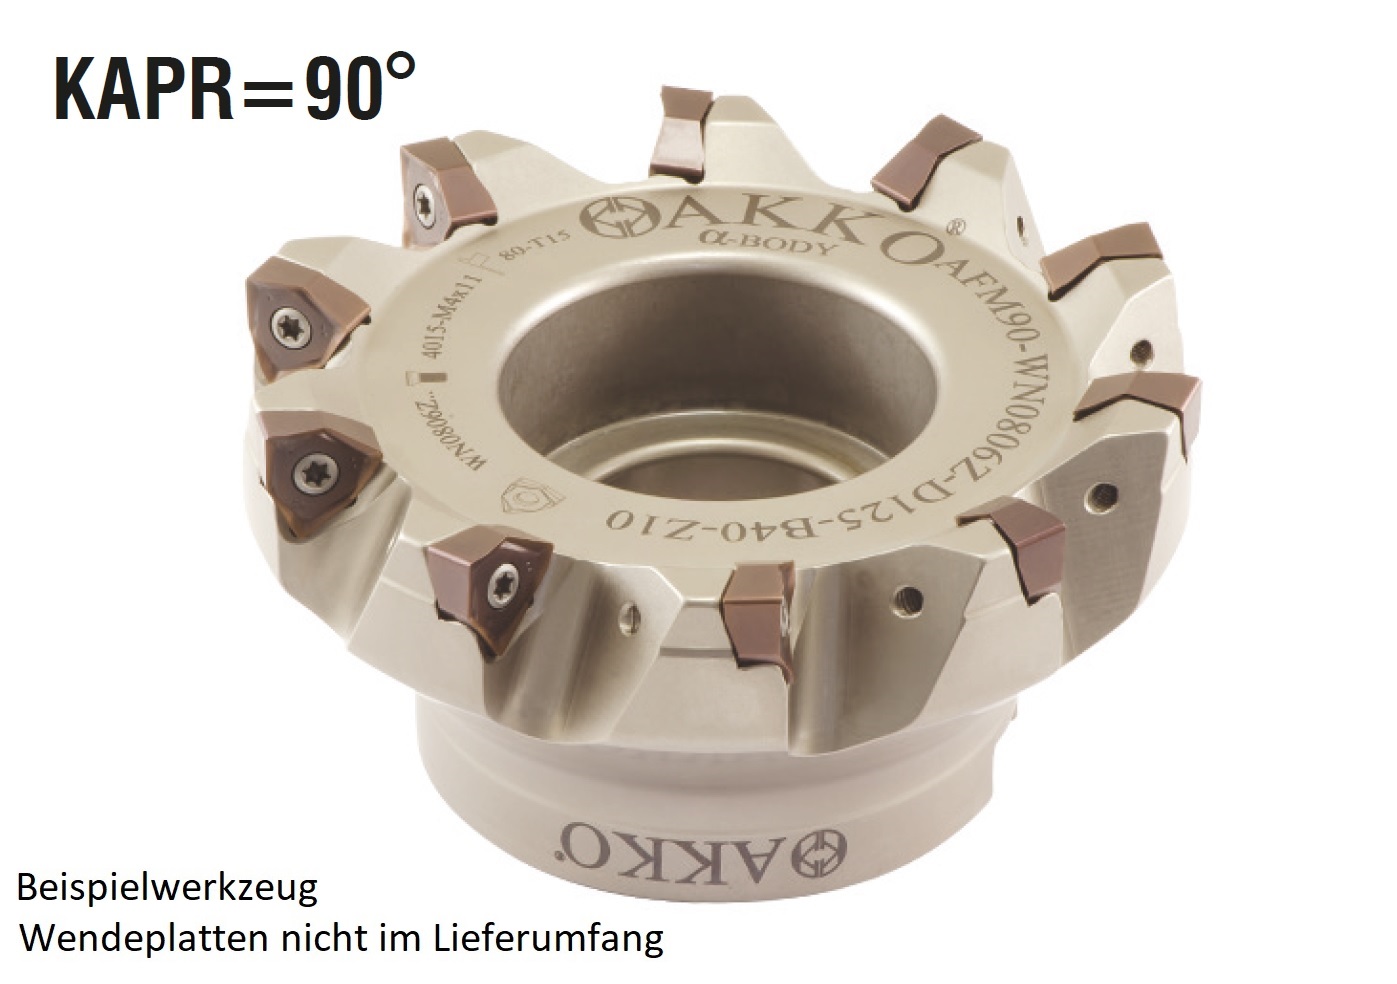 AKKO-Eckmesserkopf ø 100 mm, 90° Anstellwinkel, kompatibel mit ZCC WNHU 0604..
Schaft-Ausführung ø 32 mm (Typ A), mit Innenkühlung, Z=9